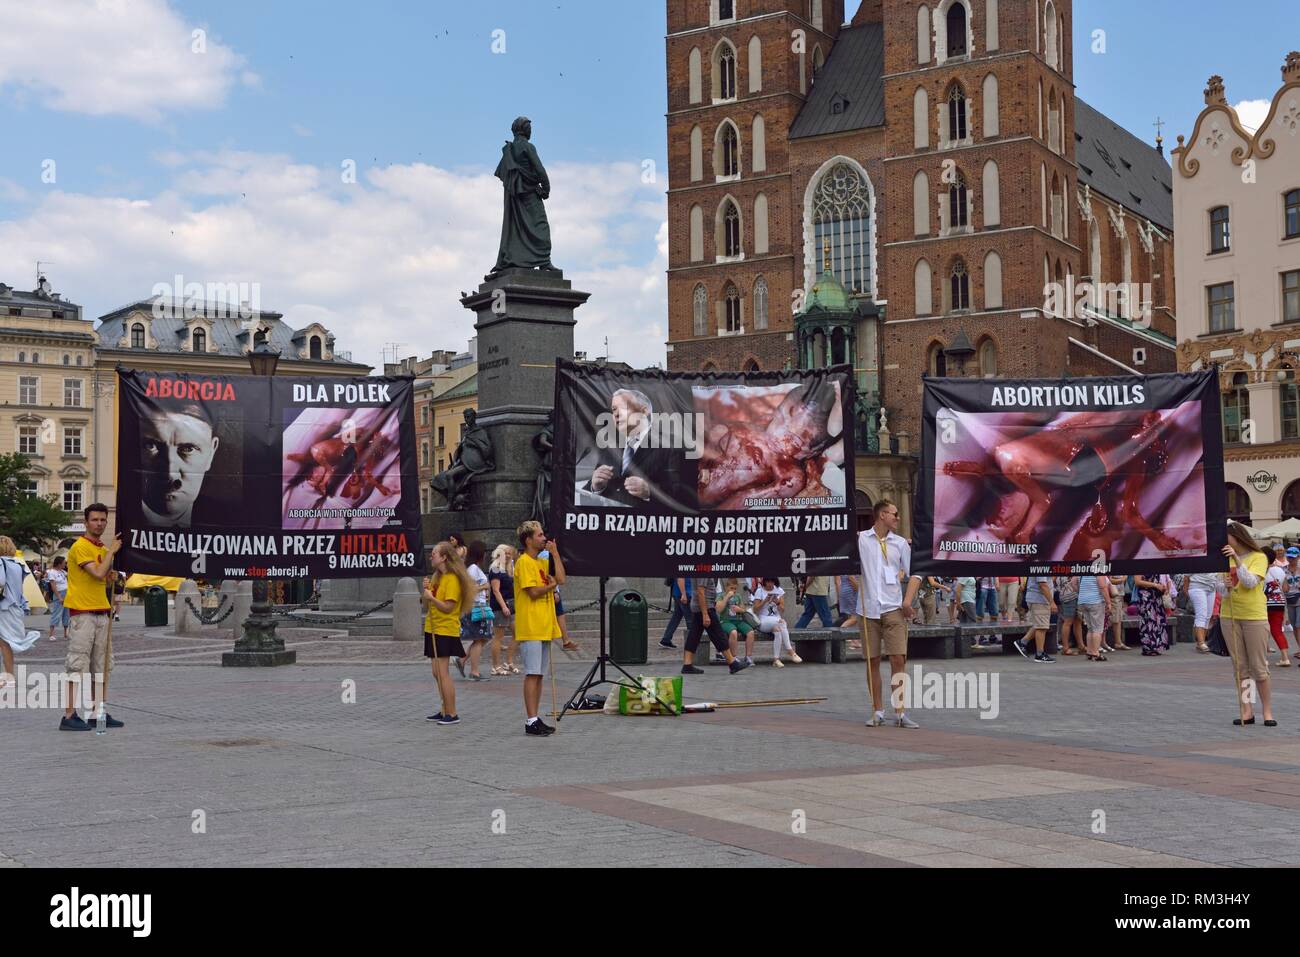 Anti-aborto dimostrazione sul Rynek Glowny, la piazza principale della città vecchia di Cracovia, Malopolska provincia (Piccola Polonia), Polonia, Europa Centrale. Foto Stock